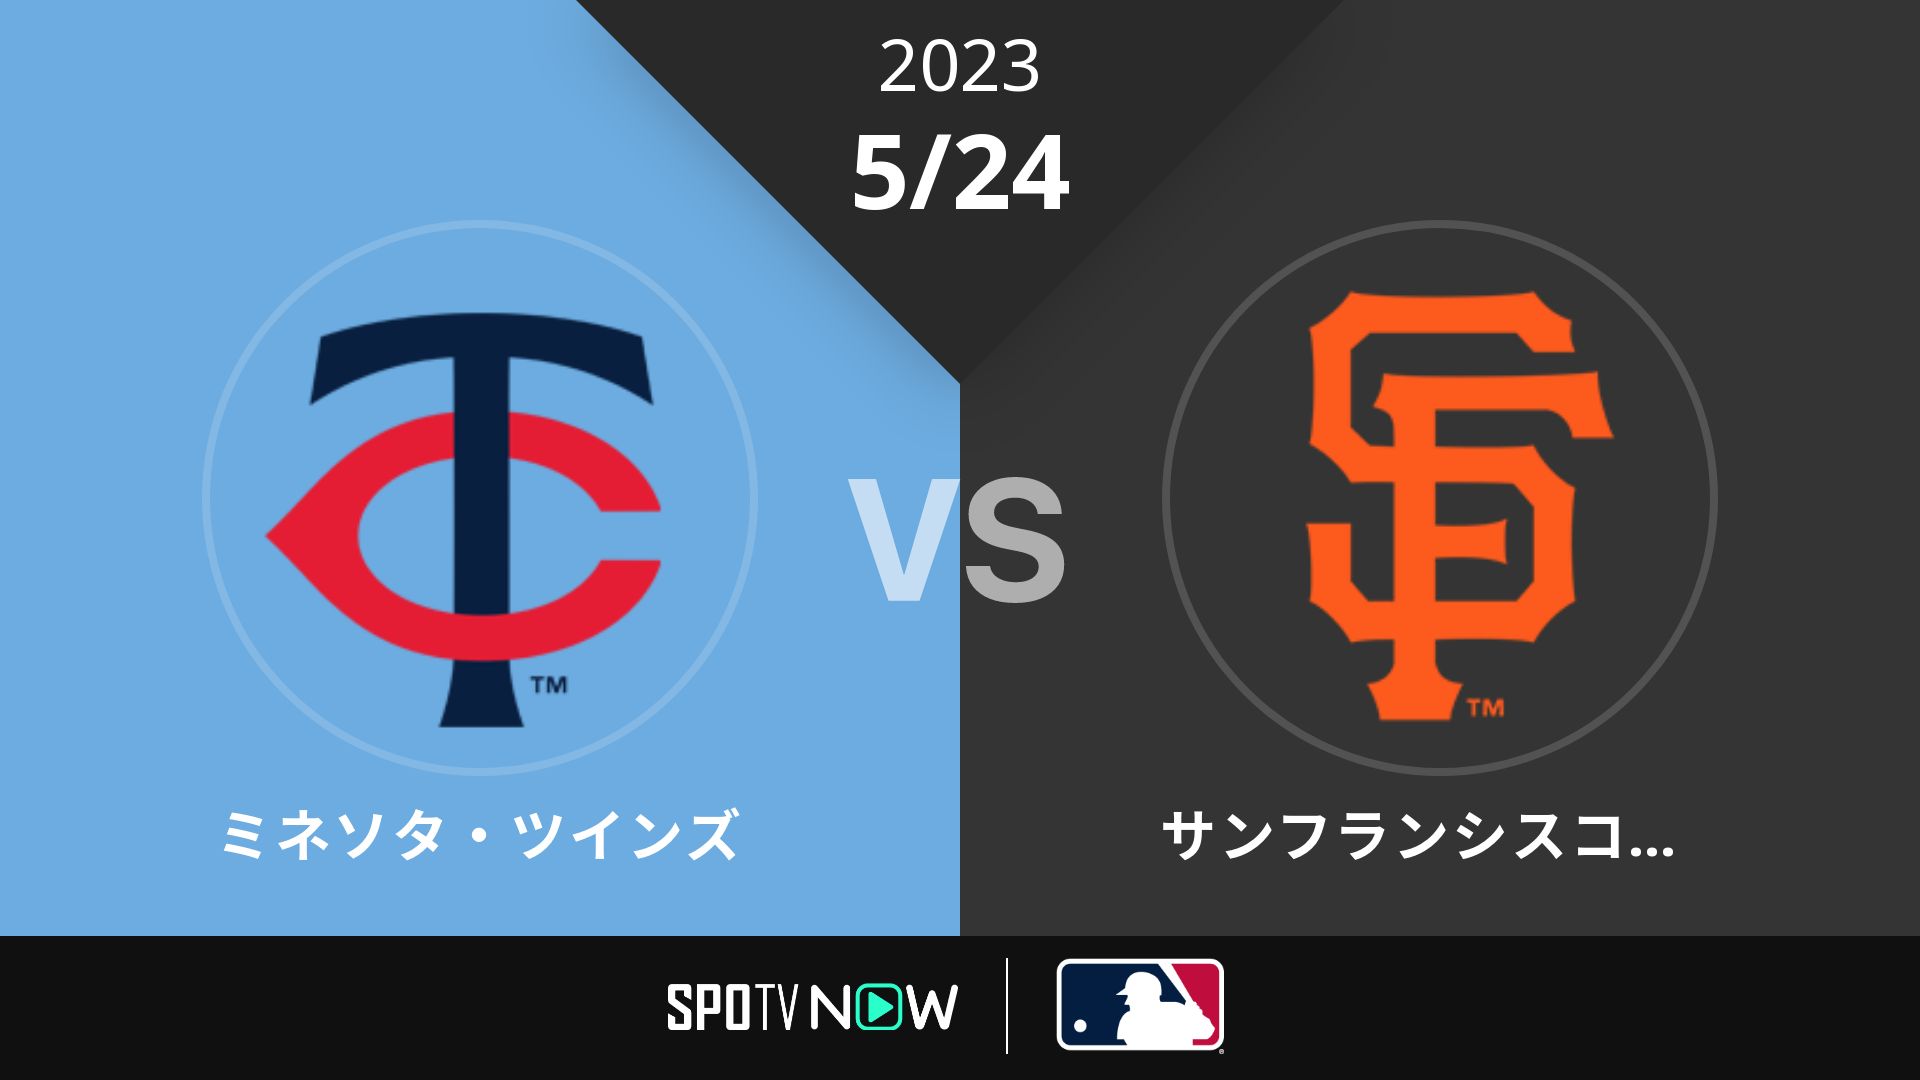 2023/5/24 ツインズ vs ジャイアンツ [MLB]